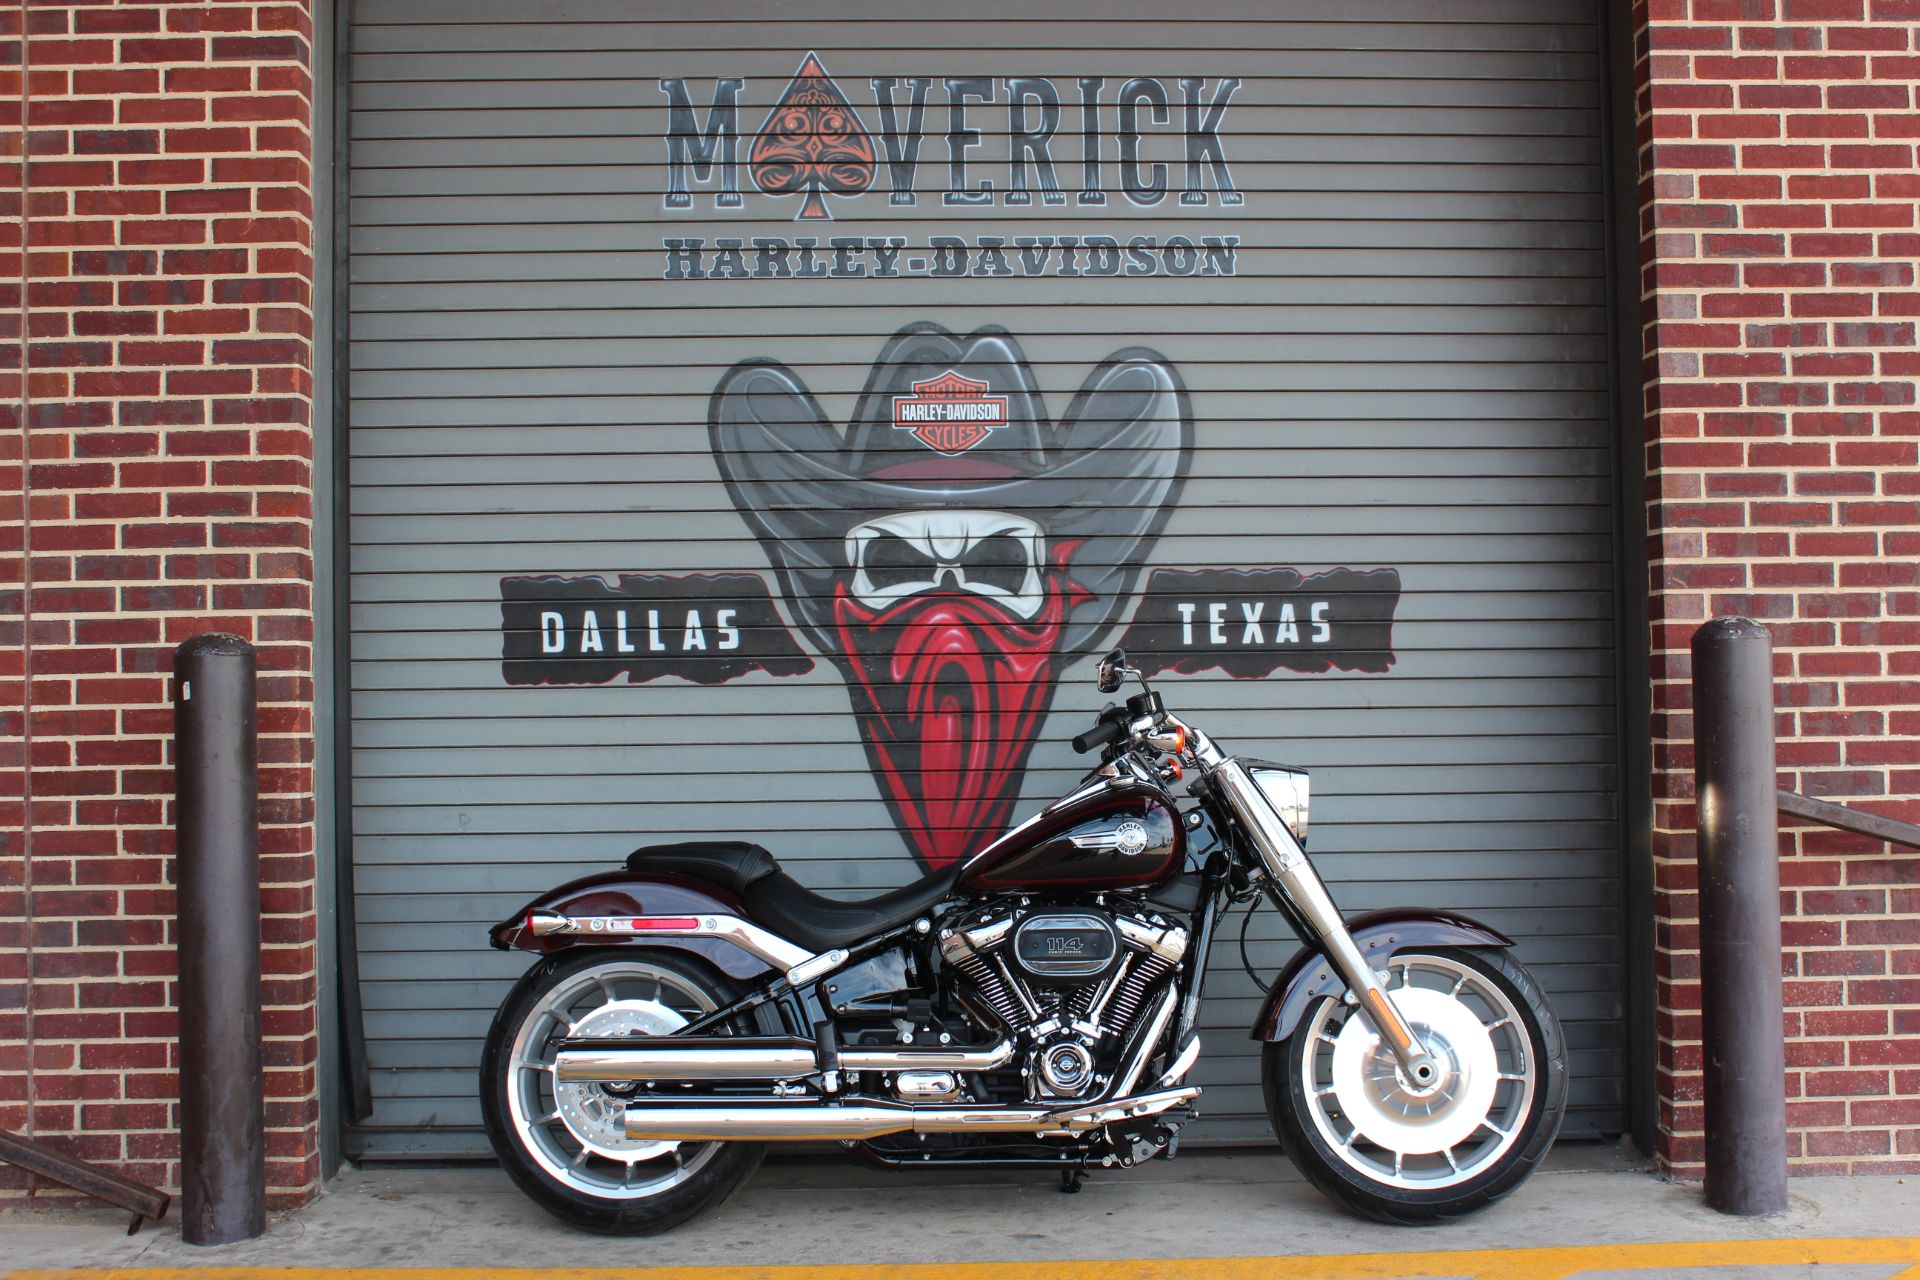 2022 Harley-Davidson Fat Boy® 114 in Carrollton, Texas - Photo 1